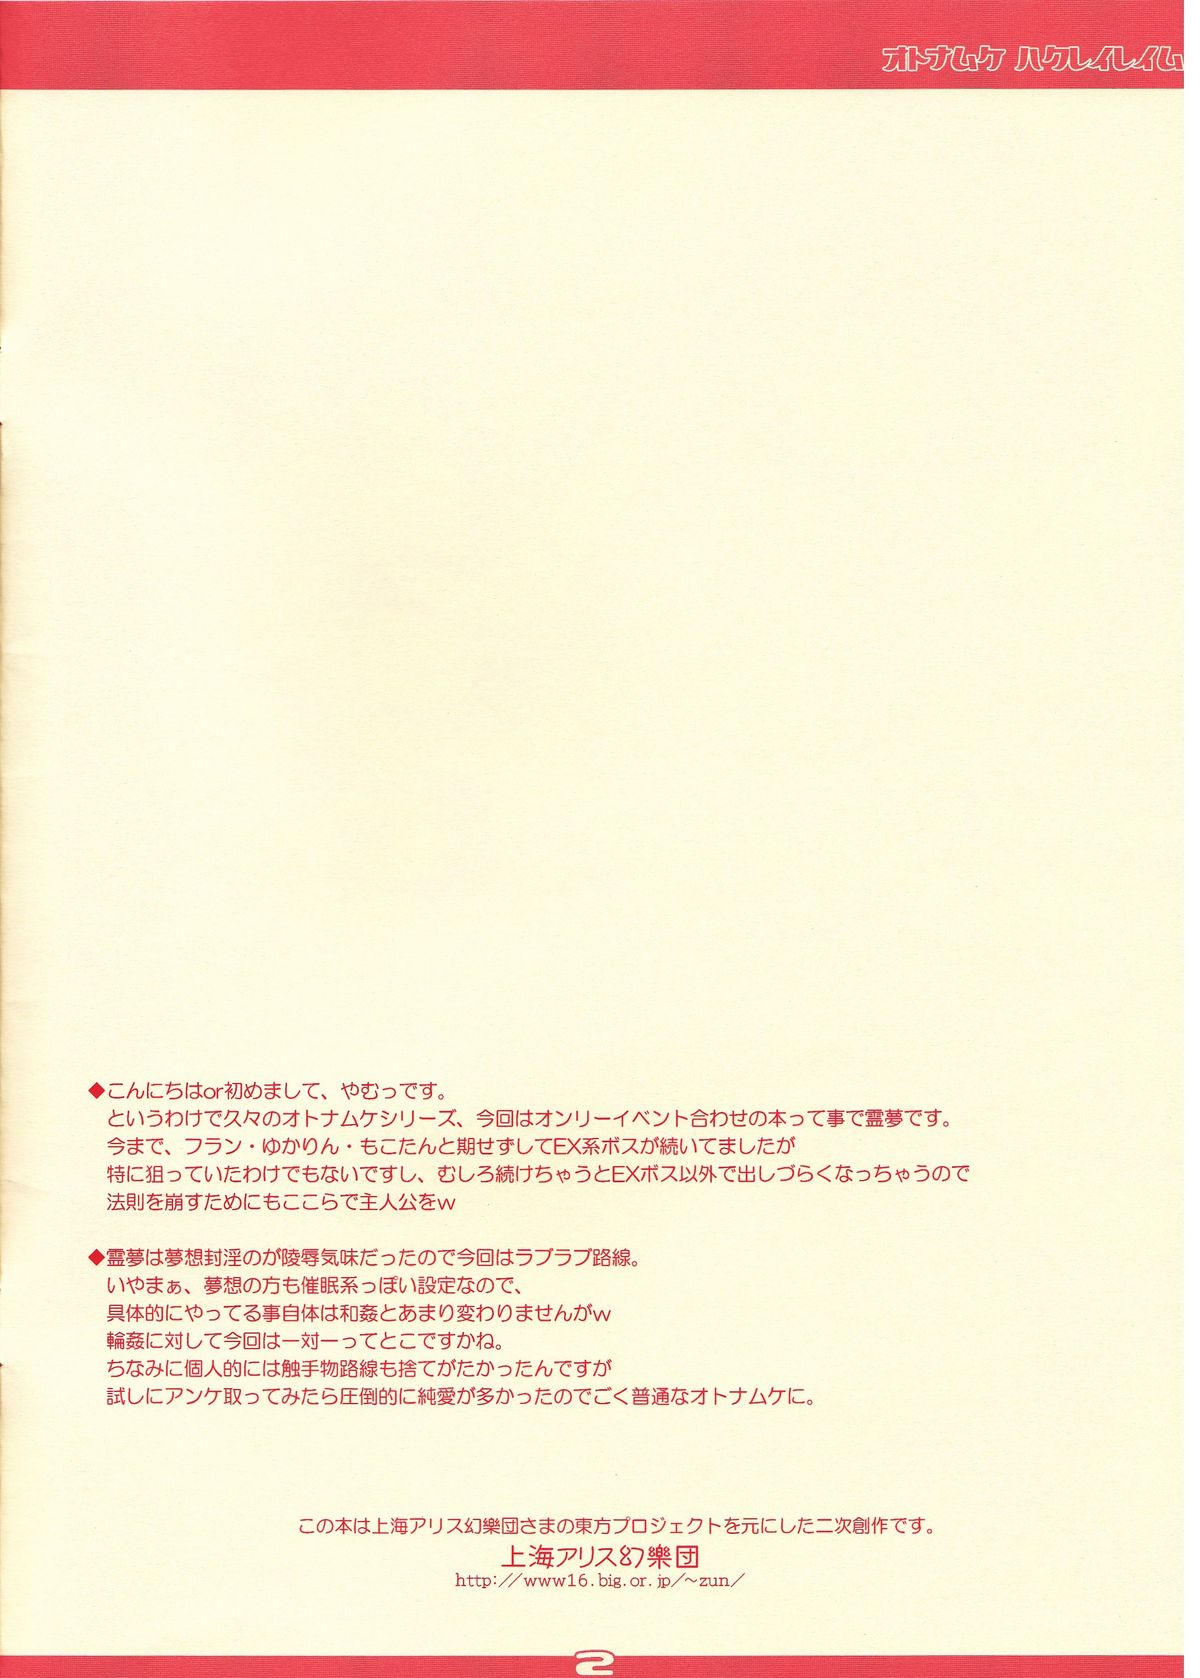 [Reverse Noise (Yamu)] Otona Muke Hakurei Reimu (Touhou Project) [Reverse Noise (やむっ)] オトナムケハクレイレイム (東方Project)